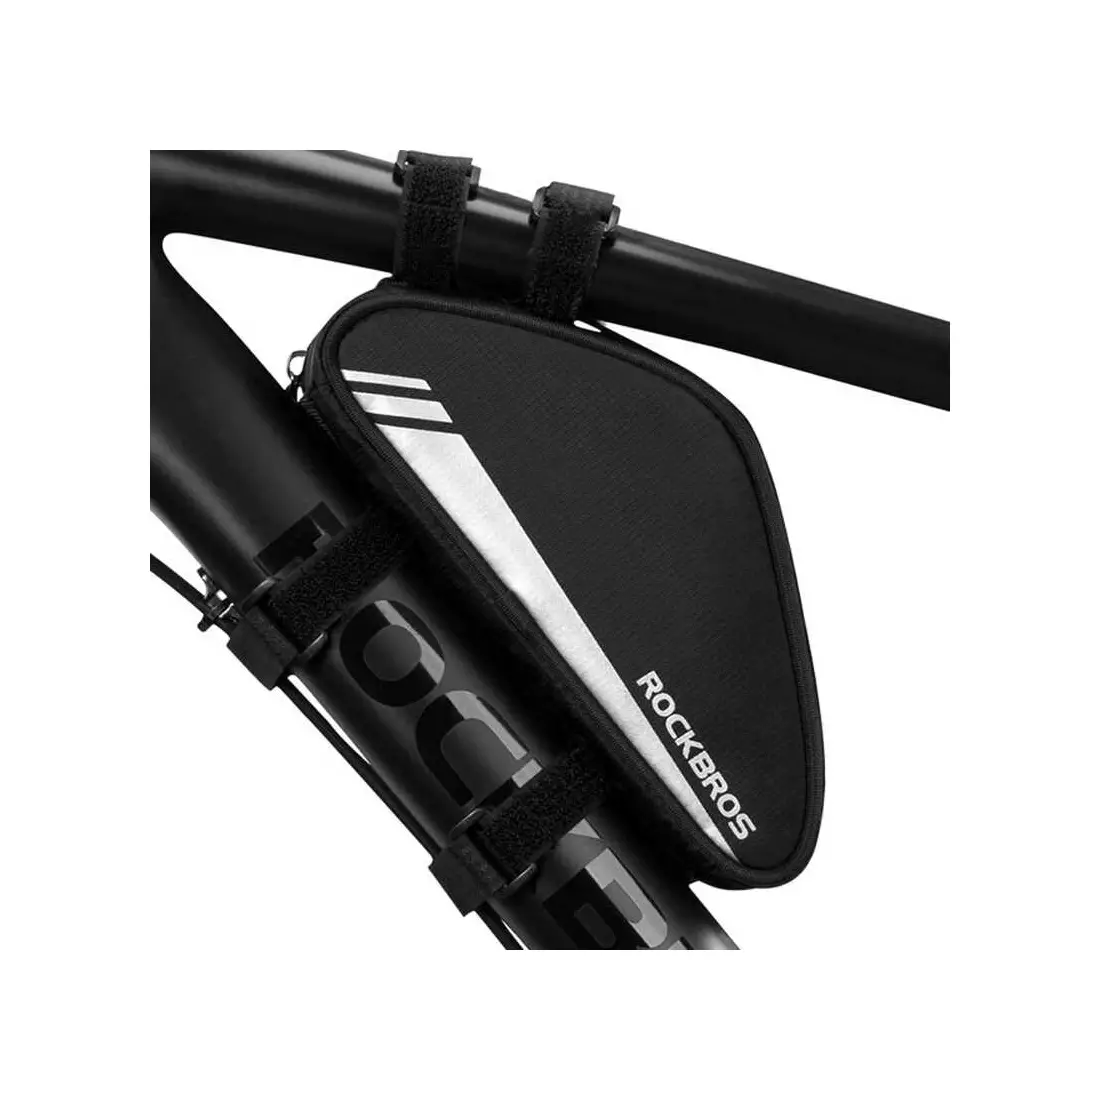 Rockbros Fahrradtasche / Packtasche unter Rahmen, schwarz B55-BK